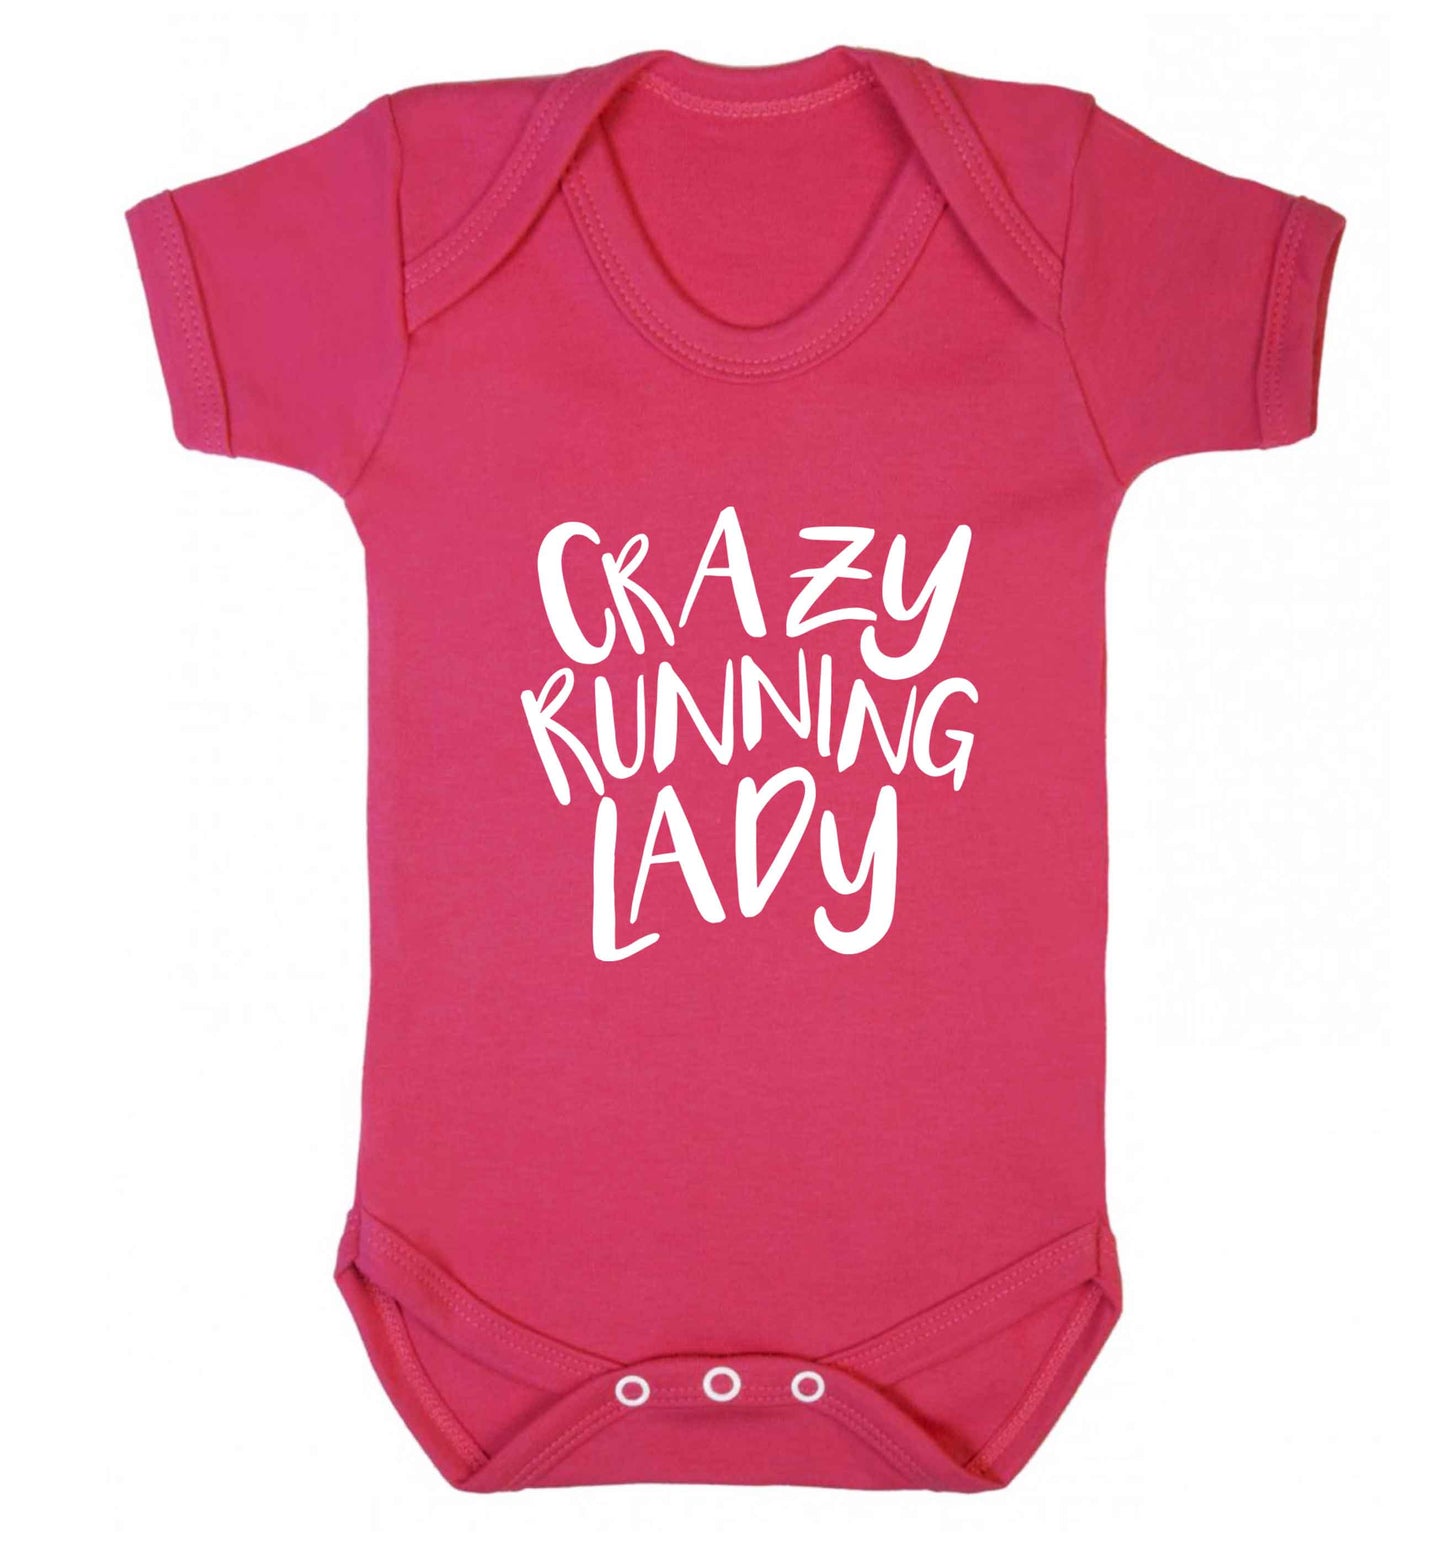 Crazy running lady baby vest dark pink 18-24 months